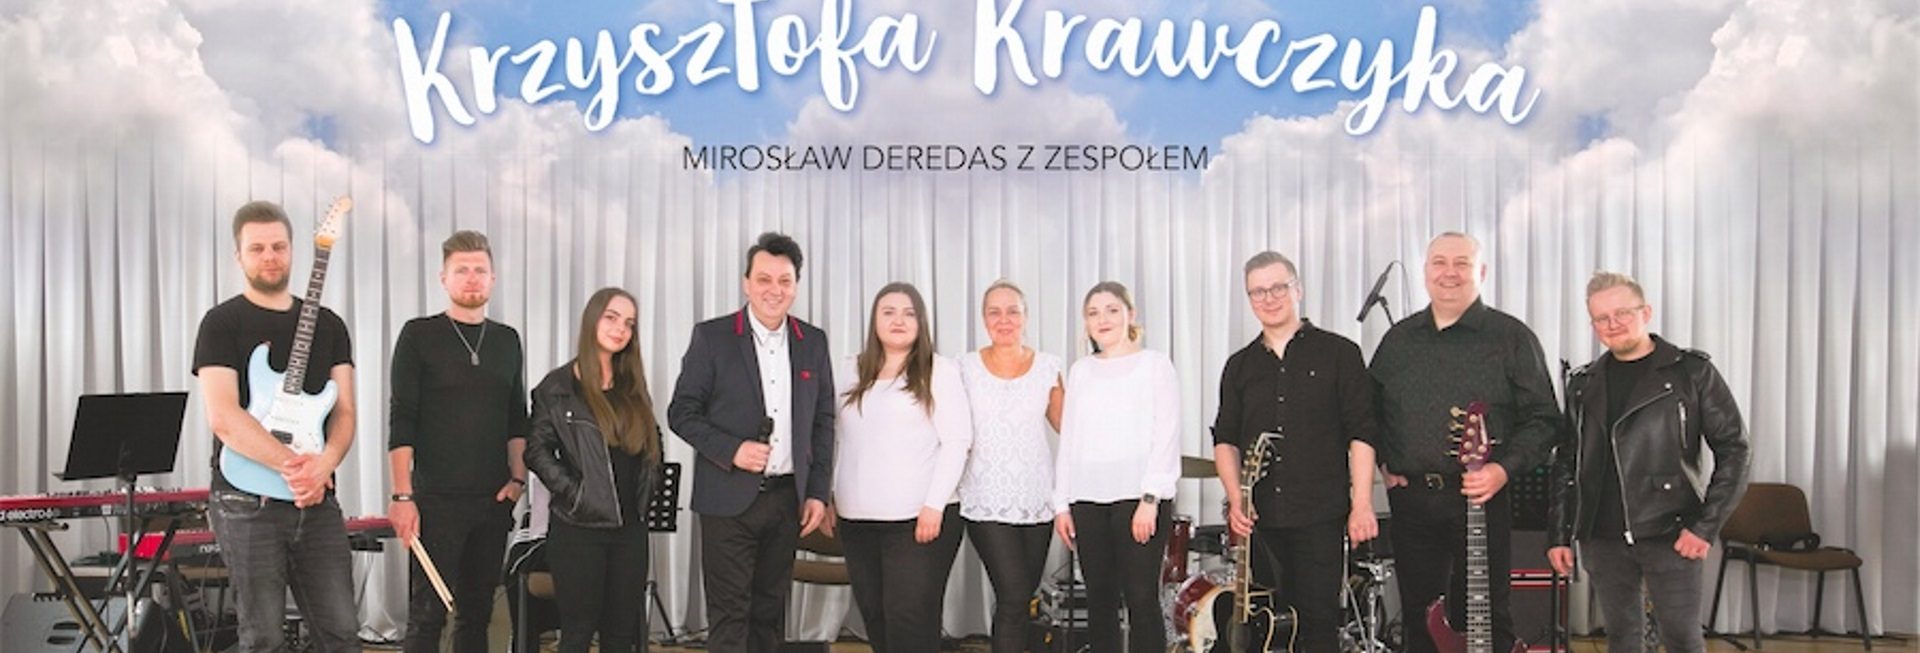 Plakat zapraszający do Kętrzyna na Koncert Covery Krzysztofa Krawczyka - Kętrzyn 2021. Na zdjęciu Mirosław Deredes z zespołem.